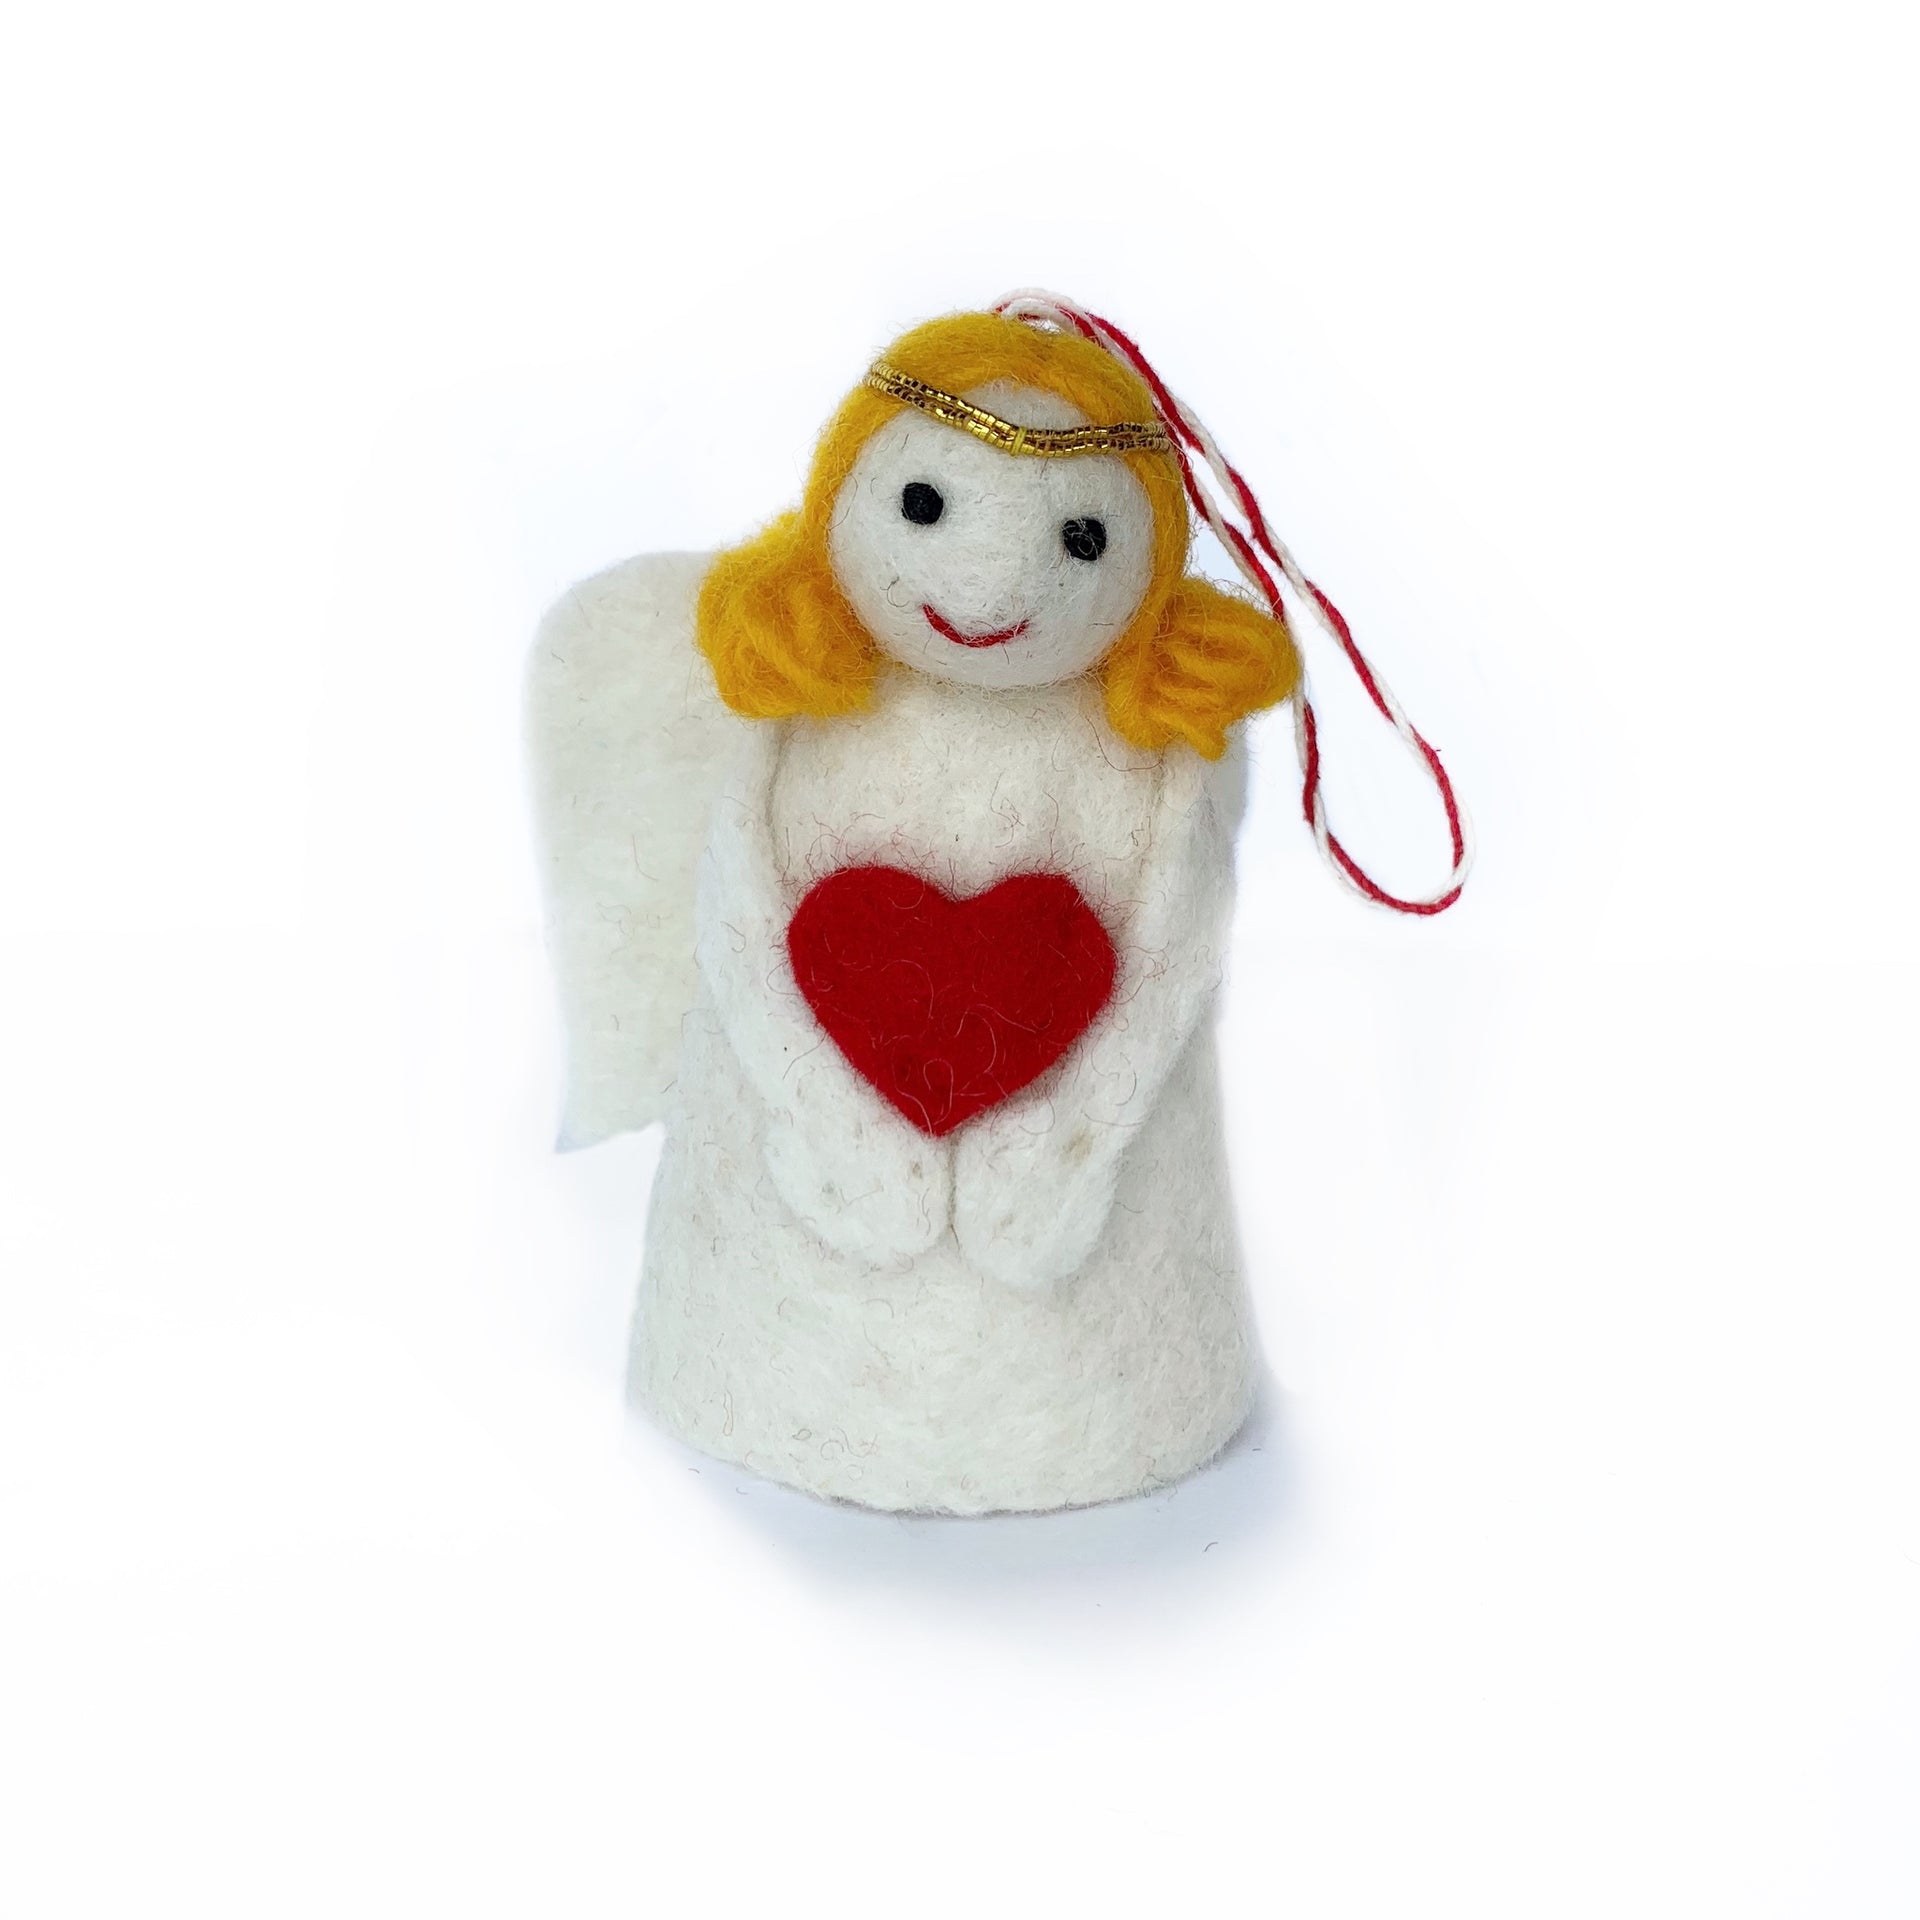 Blonde Handmade Angel Ornament for Christmas